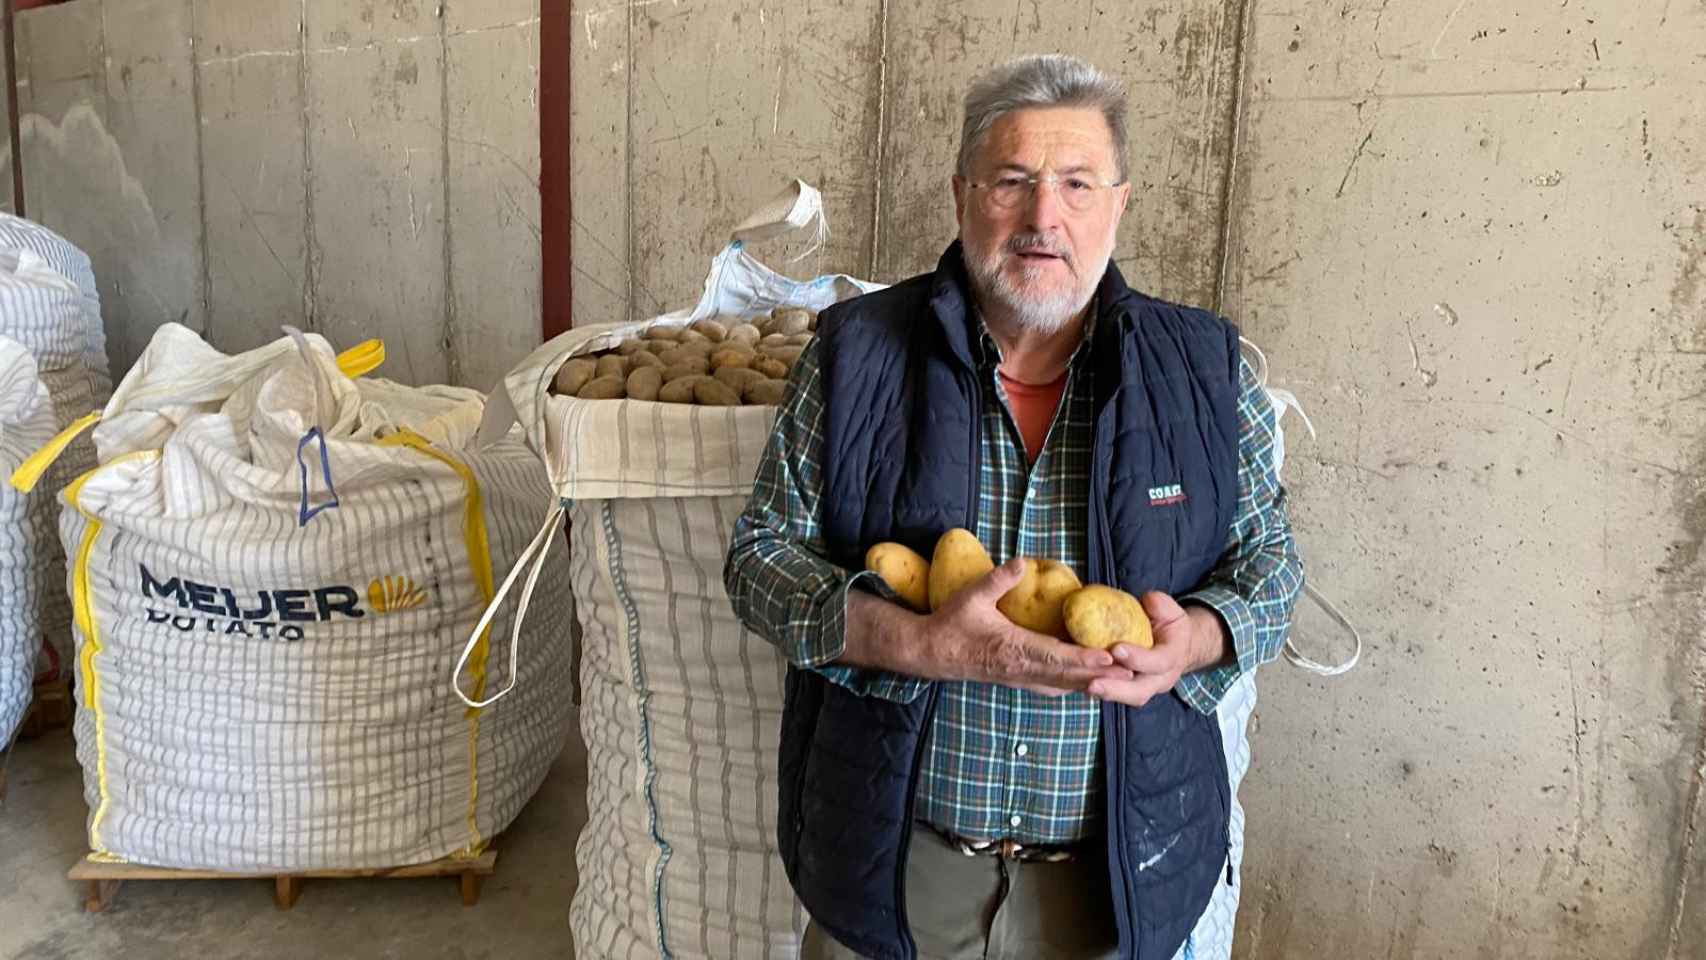  La patata egipcia va a acabar con la española : la alerta de agricultores como Alberto Duque